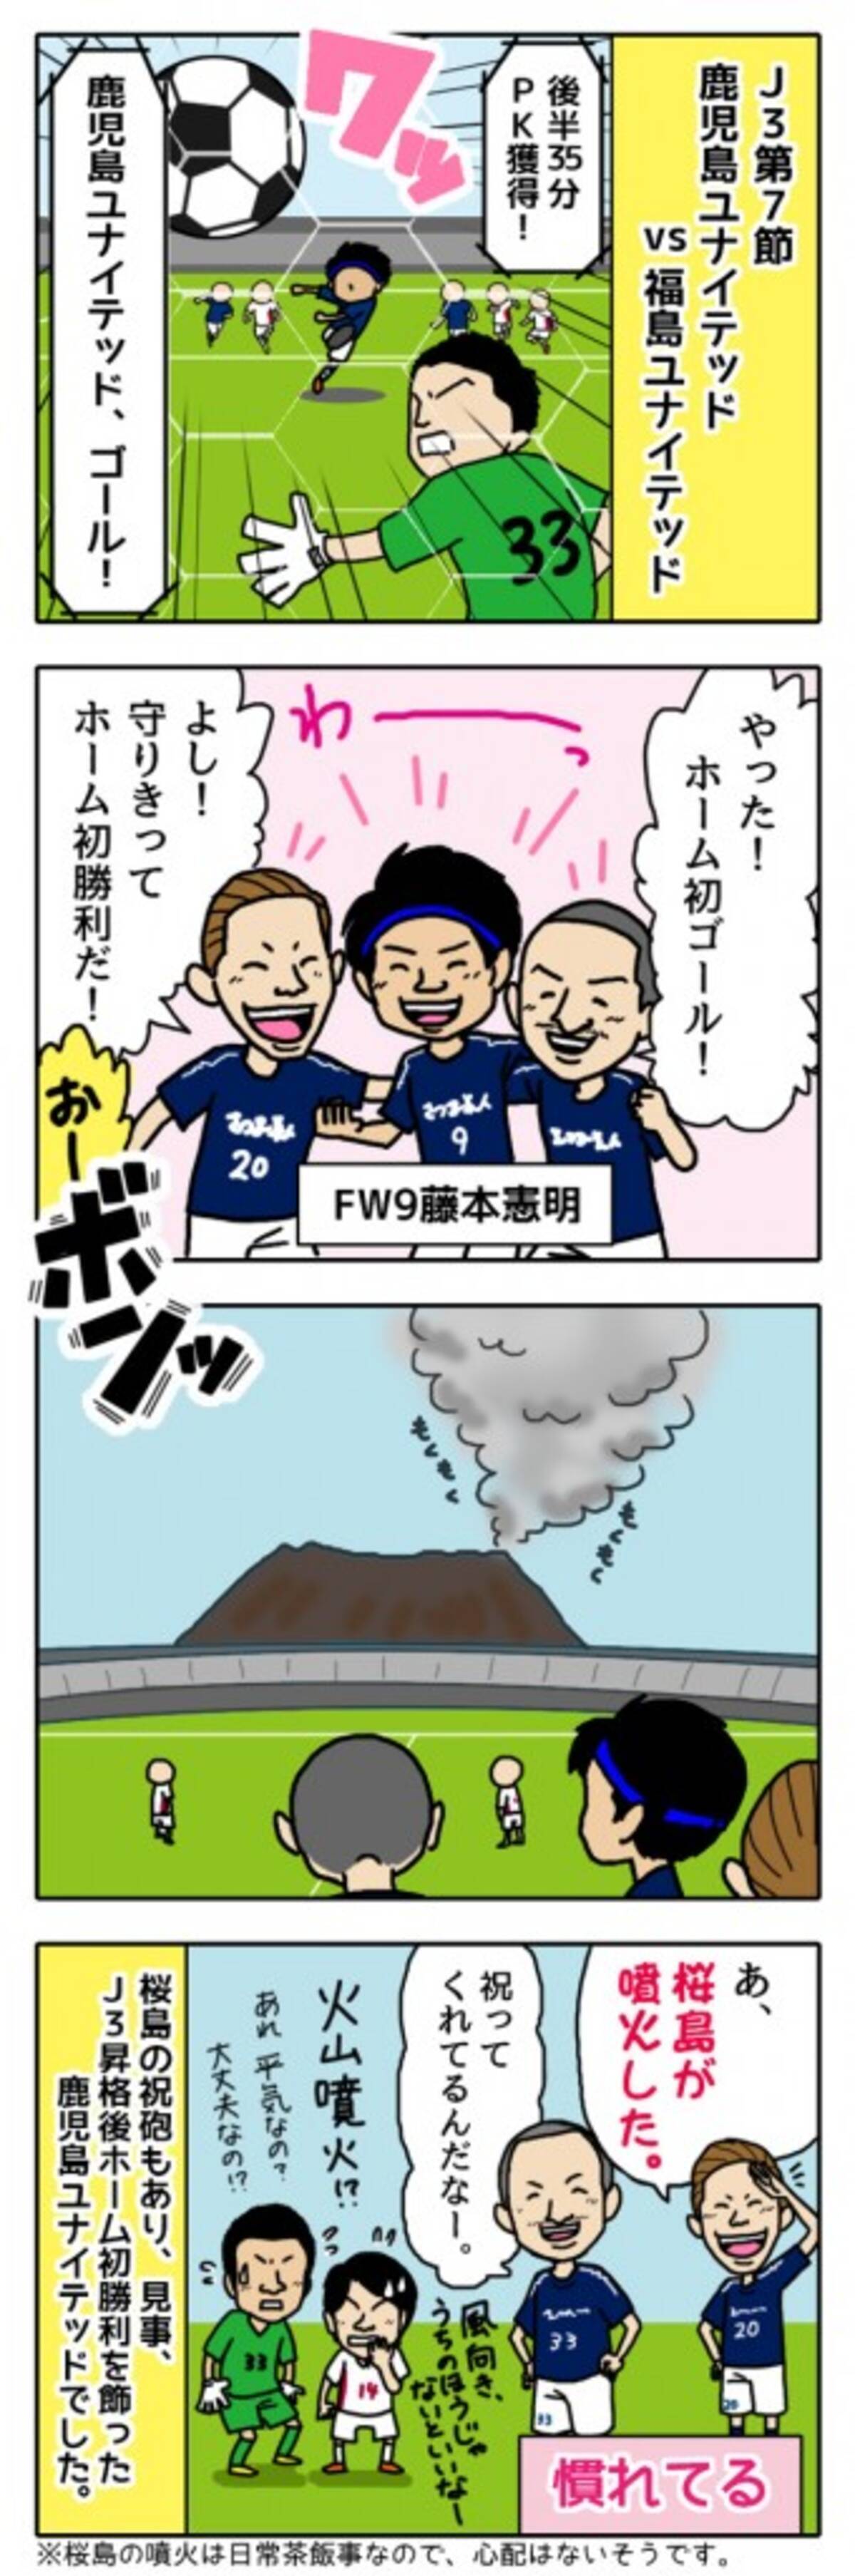 鹿児島ユナイテッドfc ホーム初ゴールで桜島も祝砲 16年5月10日 エキサイトニュース